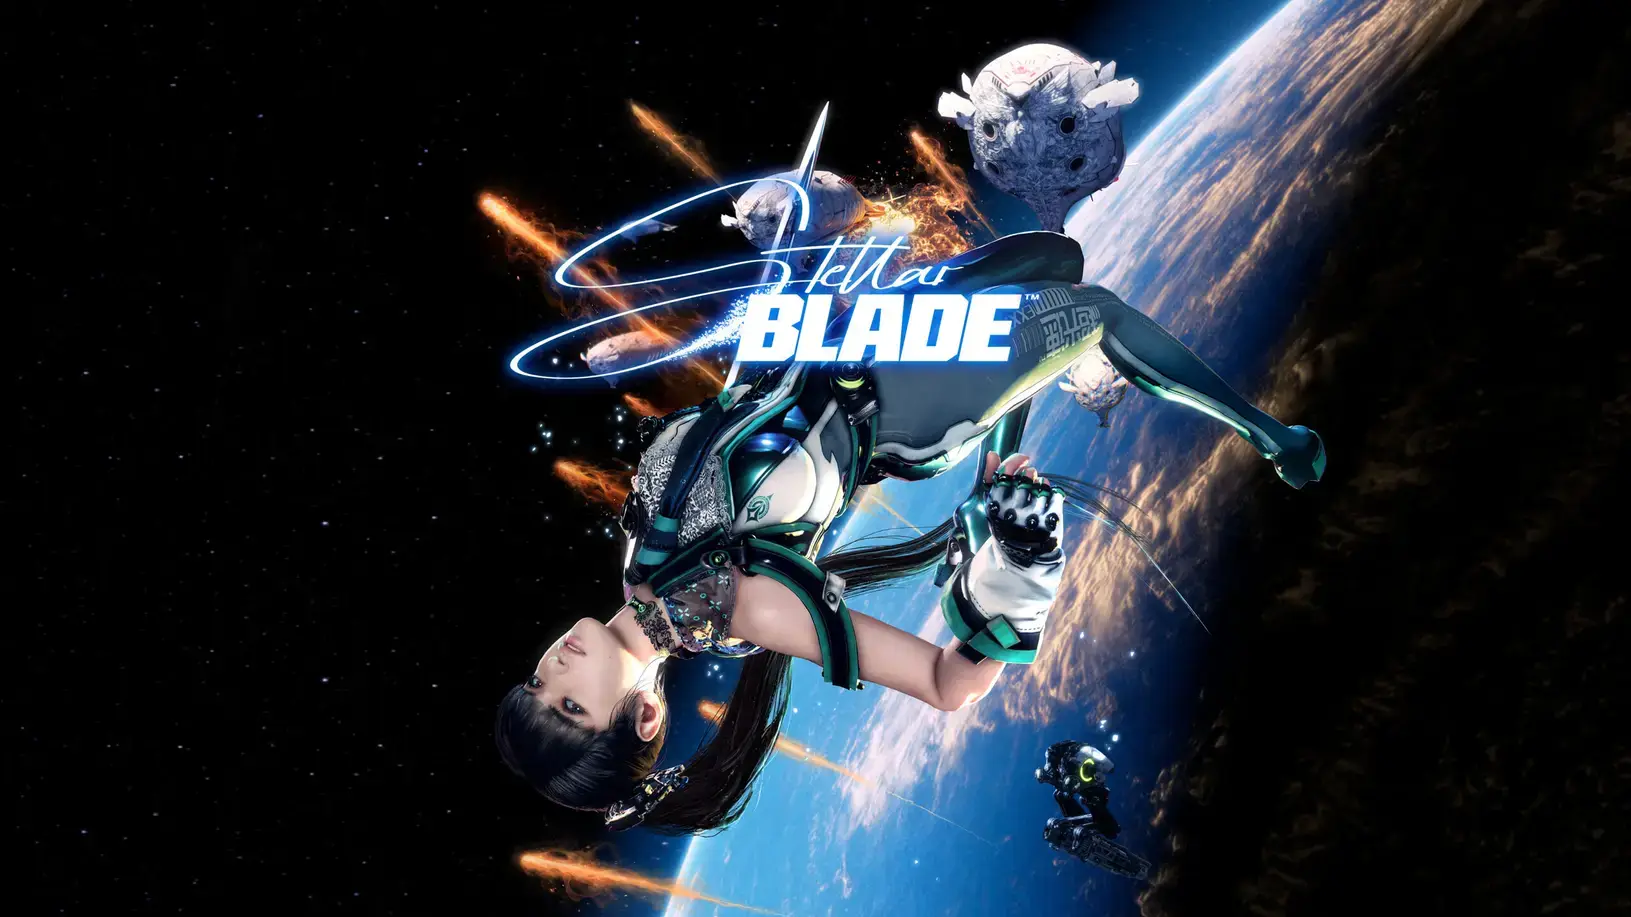 Stellar Blade - Vorbestellung möglich